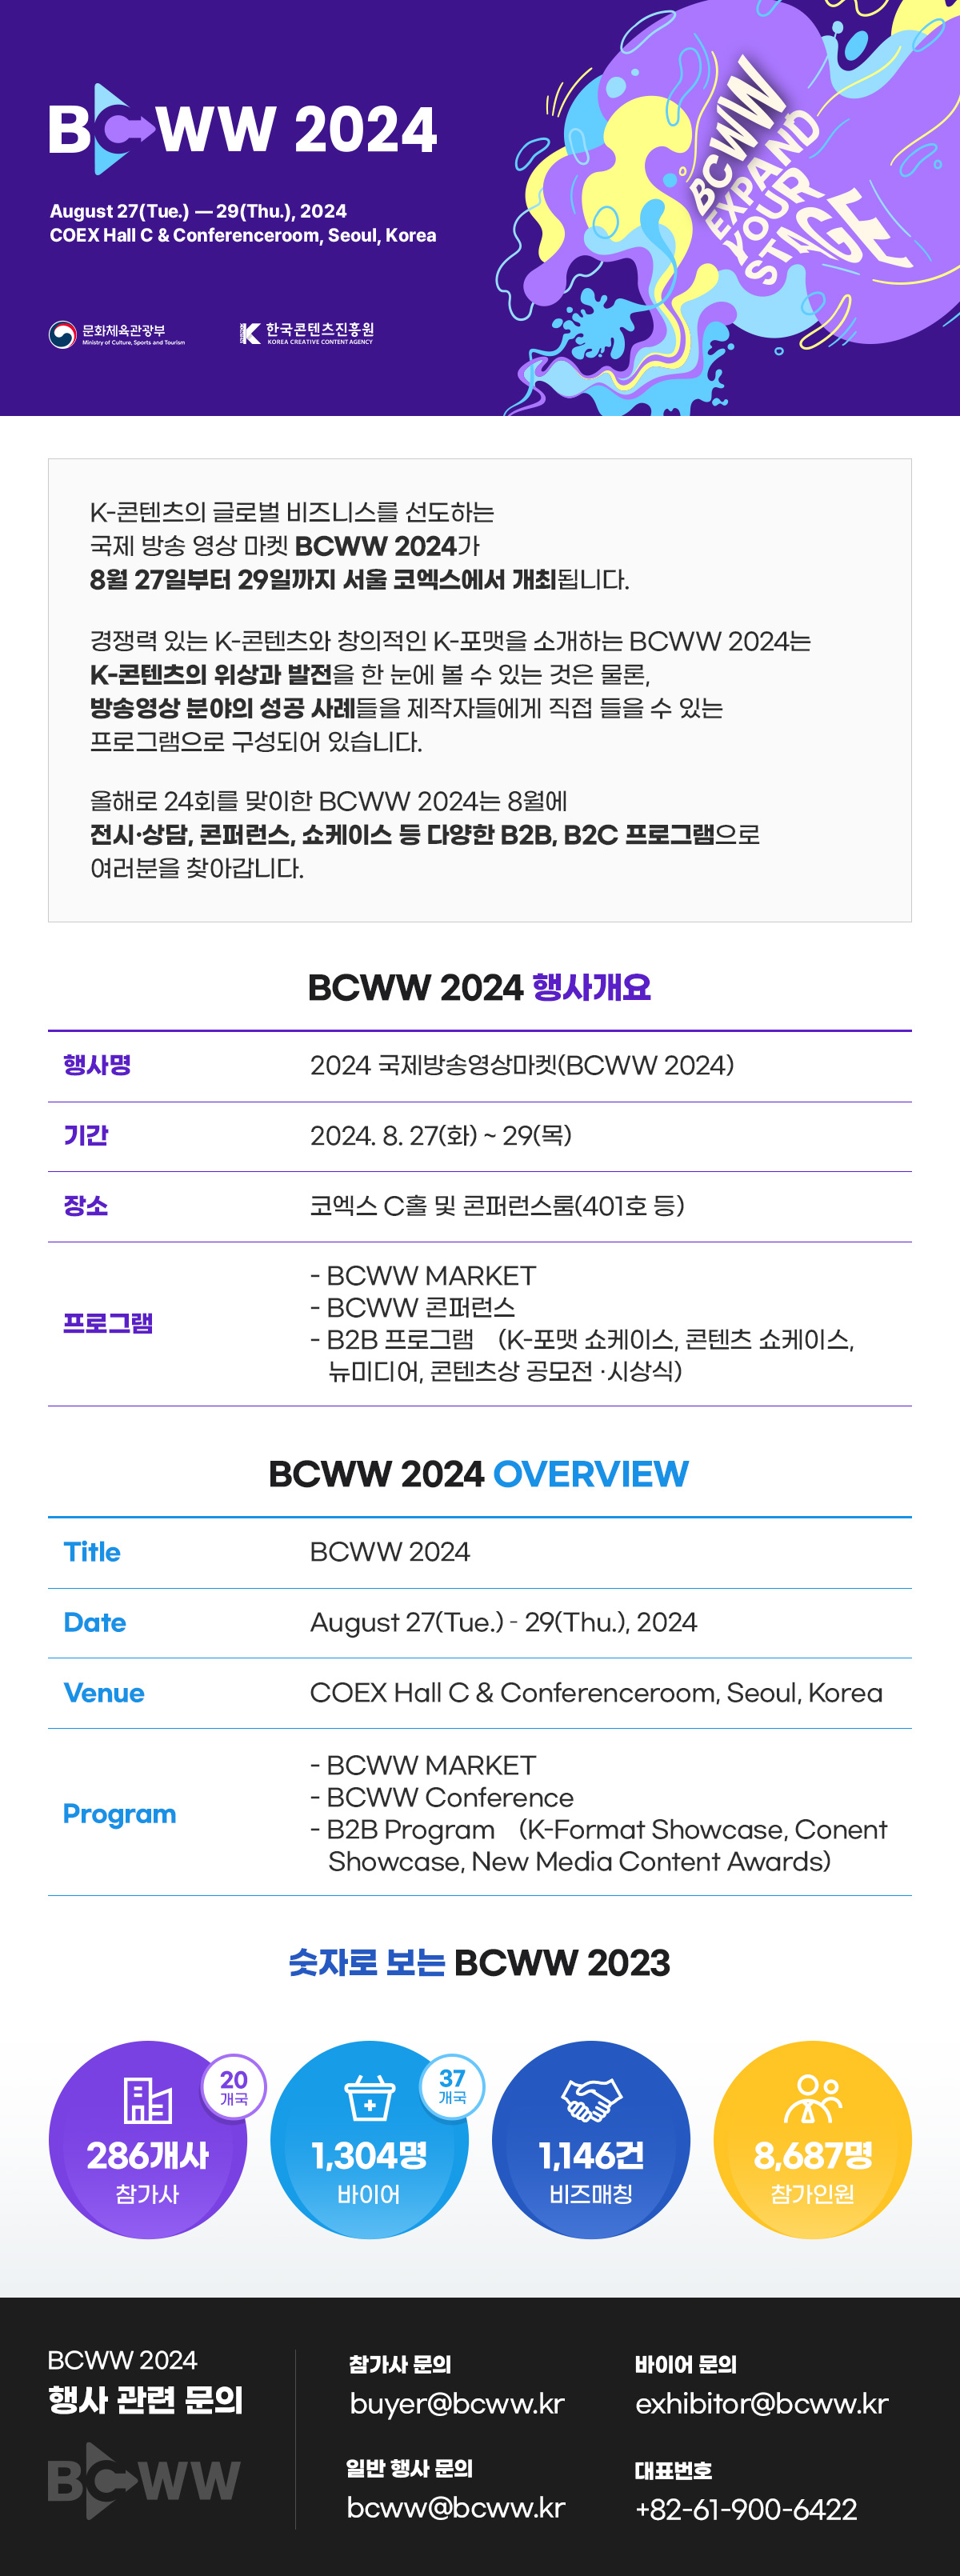 BCWW 2024